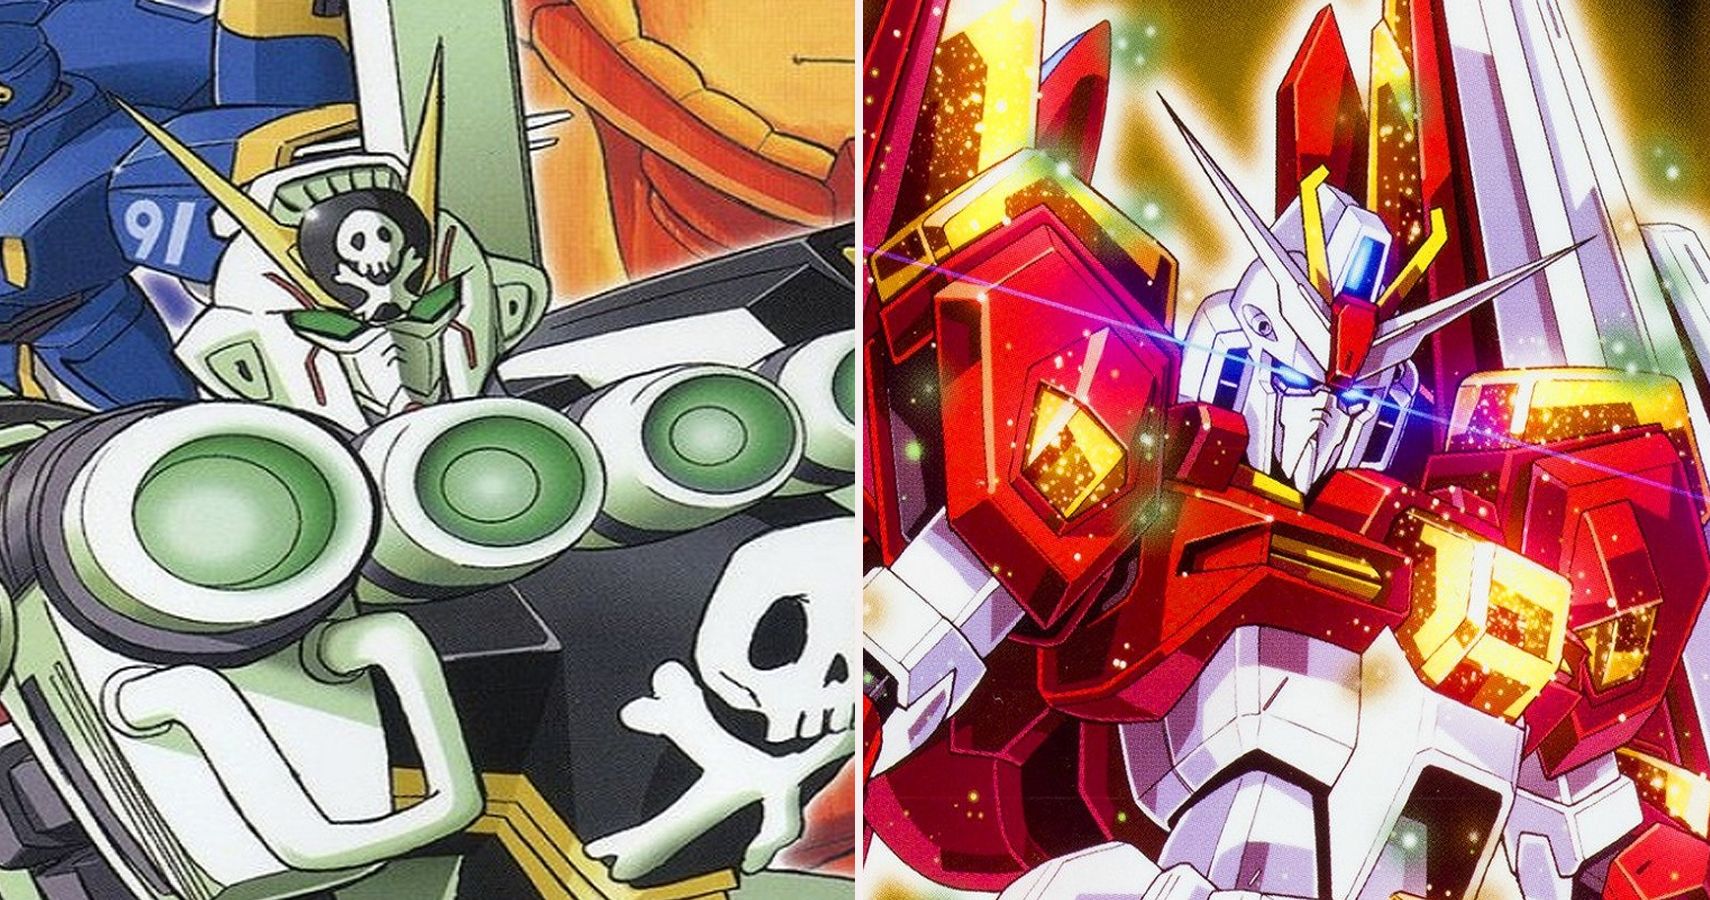 10 Best Gundam Mangas To Read Ranked Cbr